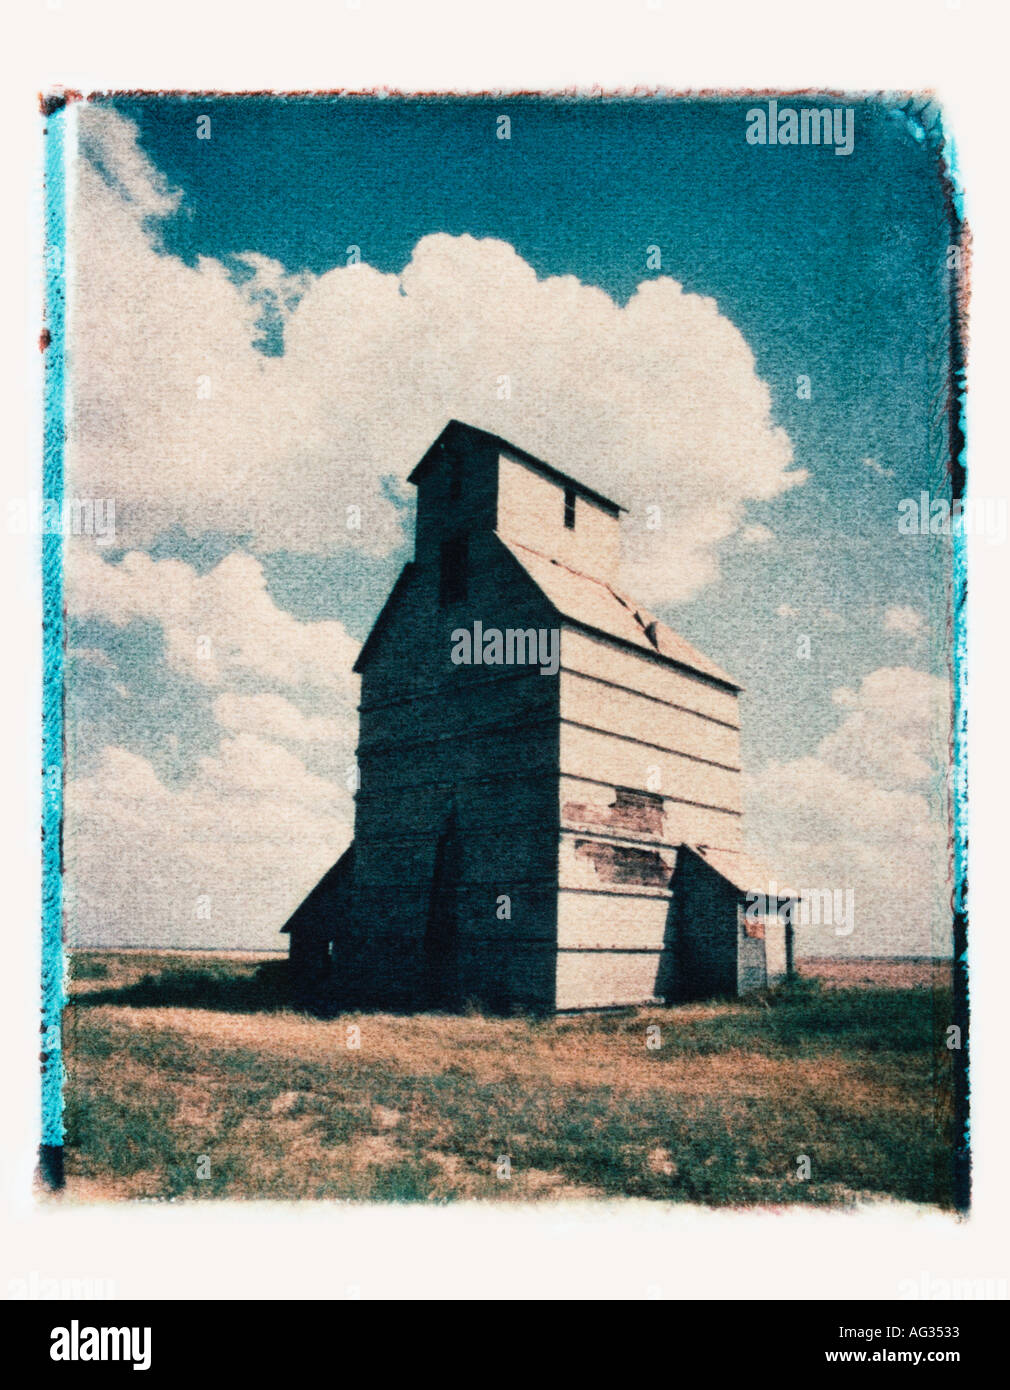 Polaroid transfer image of grain silo in Kansas USA Stock Photo